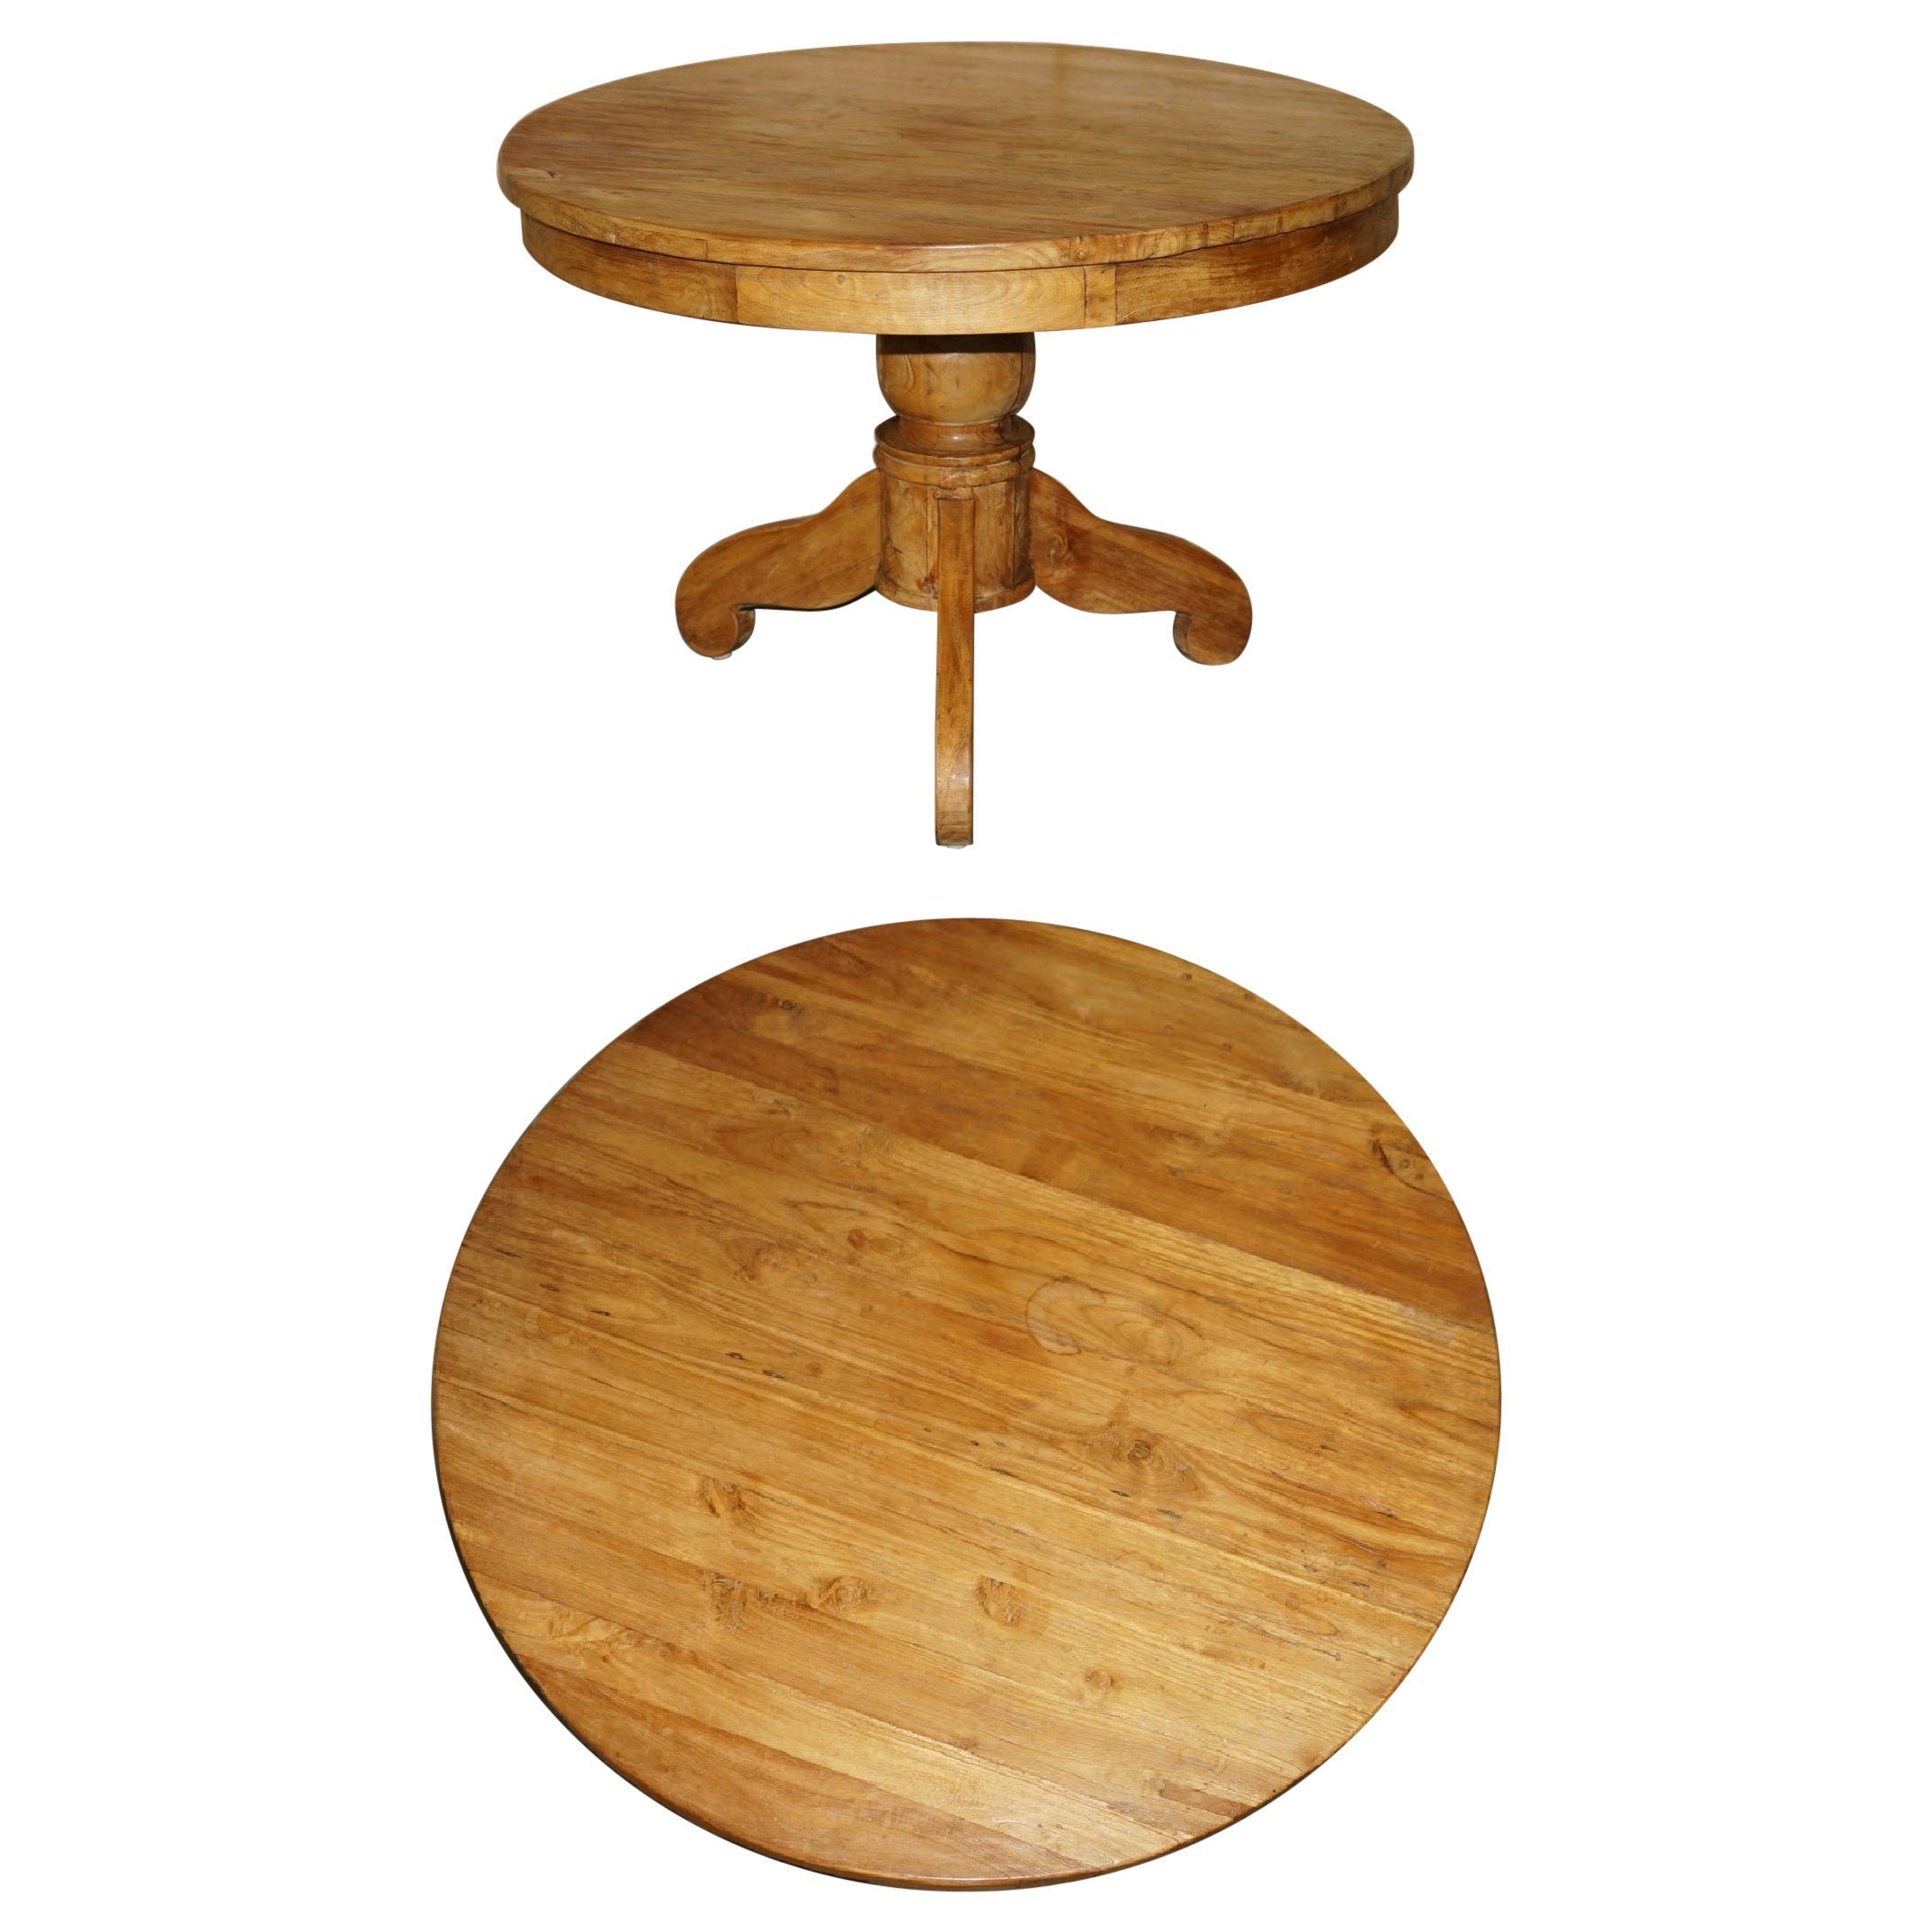 Table de salle à manger ronde rustique en chêne massif pour quatre personnes avec belle patine du bois